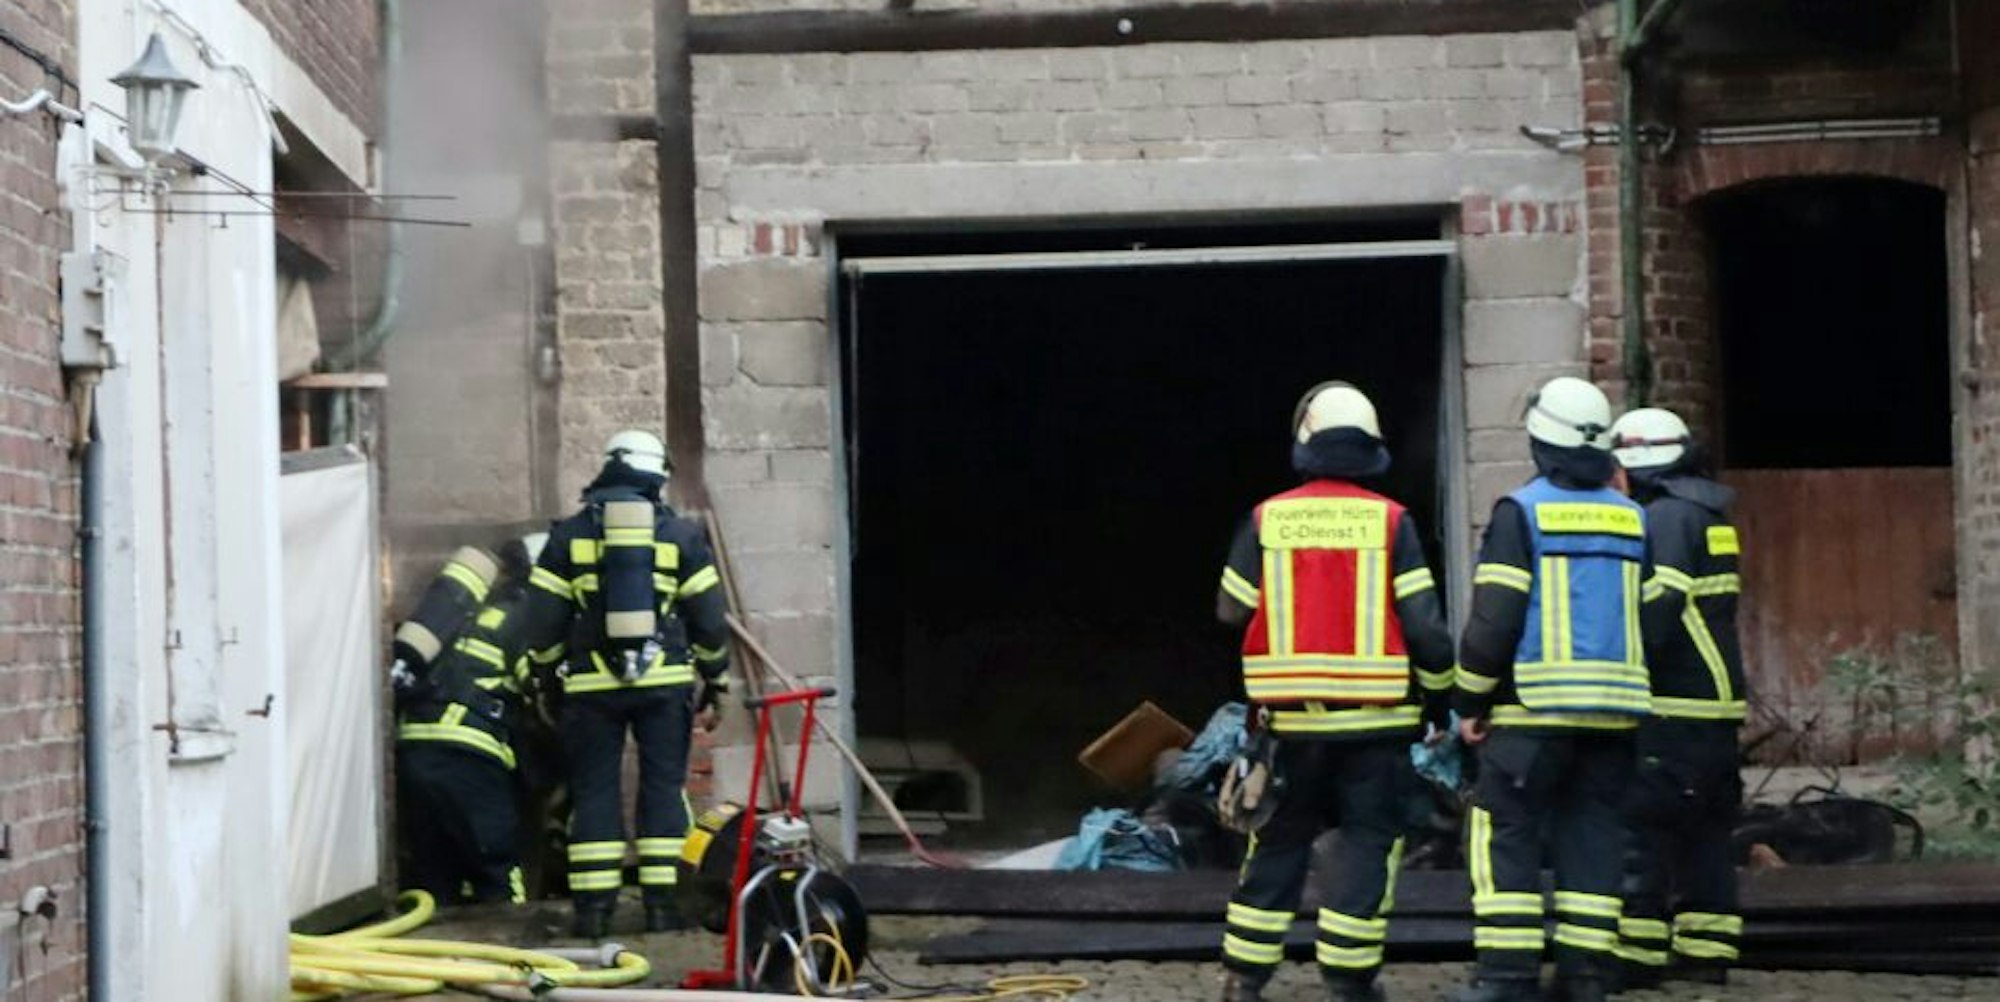 Zahlreiche Feuerwehrleute waren gestern im Einsatz, um den Kellerbrand eines Bauernhofs in Fischenich zu löschen.